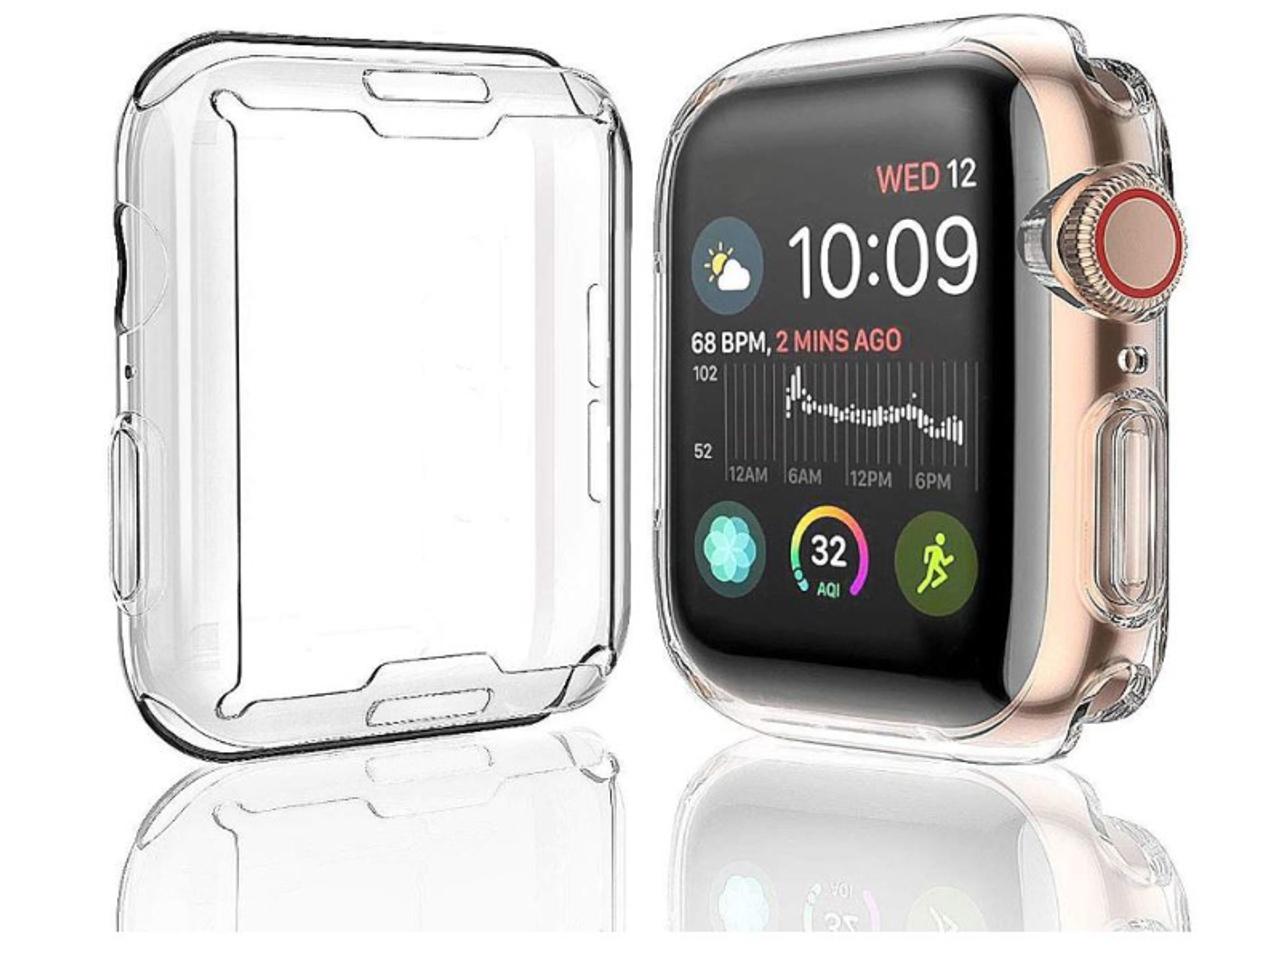 【きょうのセール情報】Amazonタイムセールで、500円台のApple Watch専用保護ケース2個セットや2,000円台の6in1 Type-C多機能ハブがお買い得に